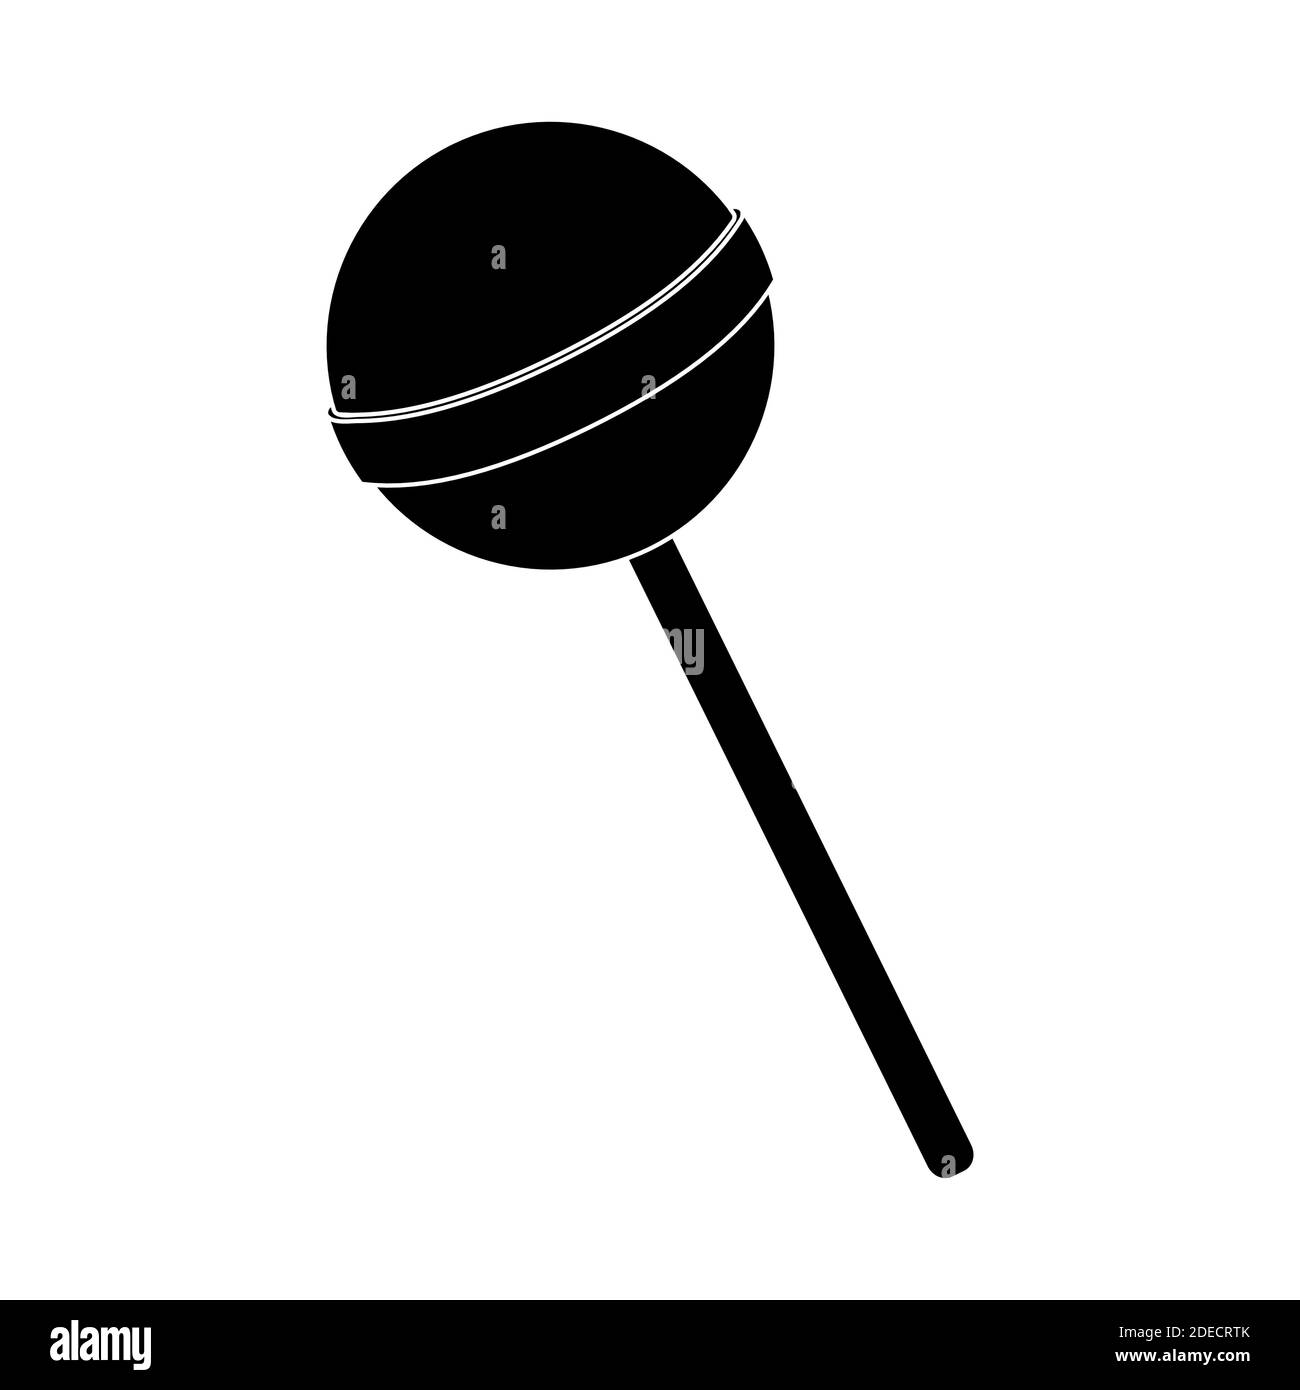 Lollipop Silhouette Illustration. Runder schwarzer Popsicle. Vektor auf weißem Hintergrund isoliert. Lolly-Form. Symbol für Knabberbonbons für Kinder. Stock Vektor